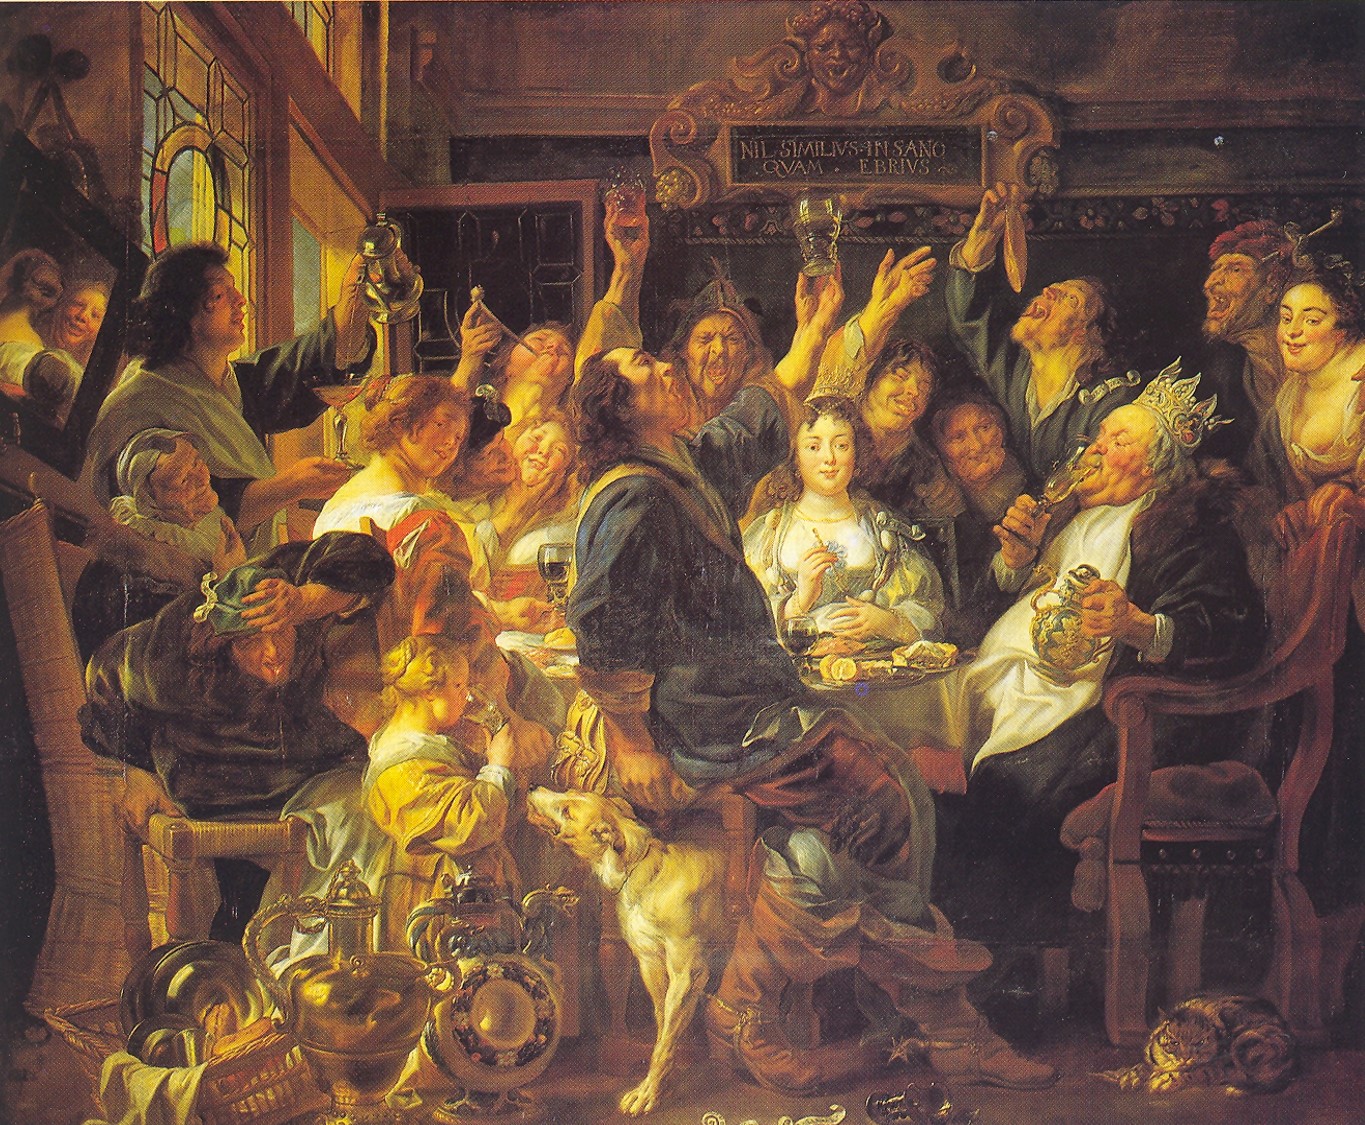 Jacob Jordaens, Le Roi boit !, 1655, 242x300 cm, Kunsthistorisches Museum, Vienne